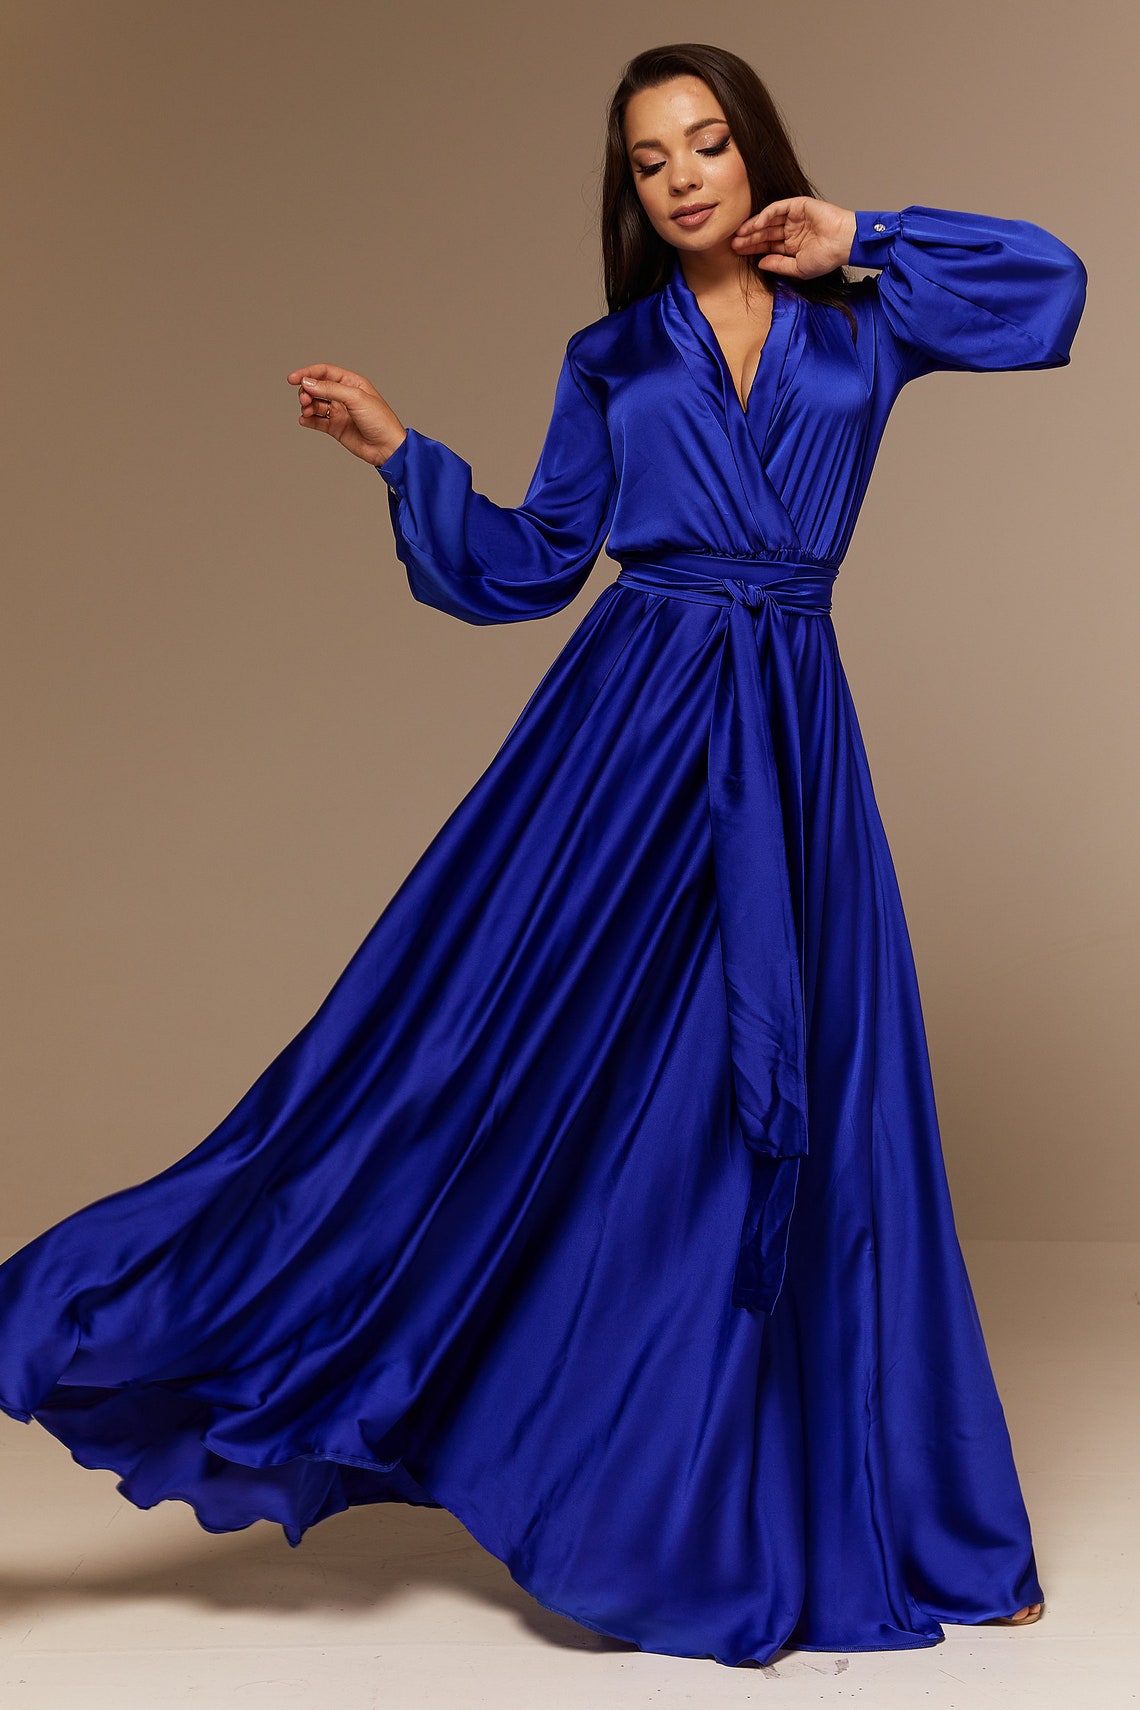 Royal Blue Silk Bridesmaid Dress Long Sleeve Maxi Satin | Etsy